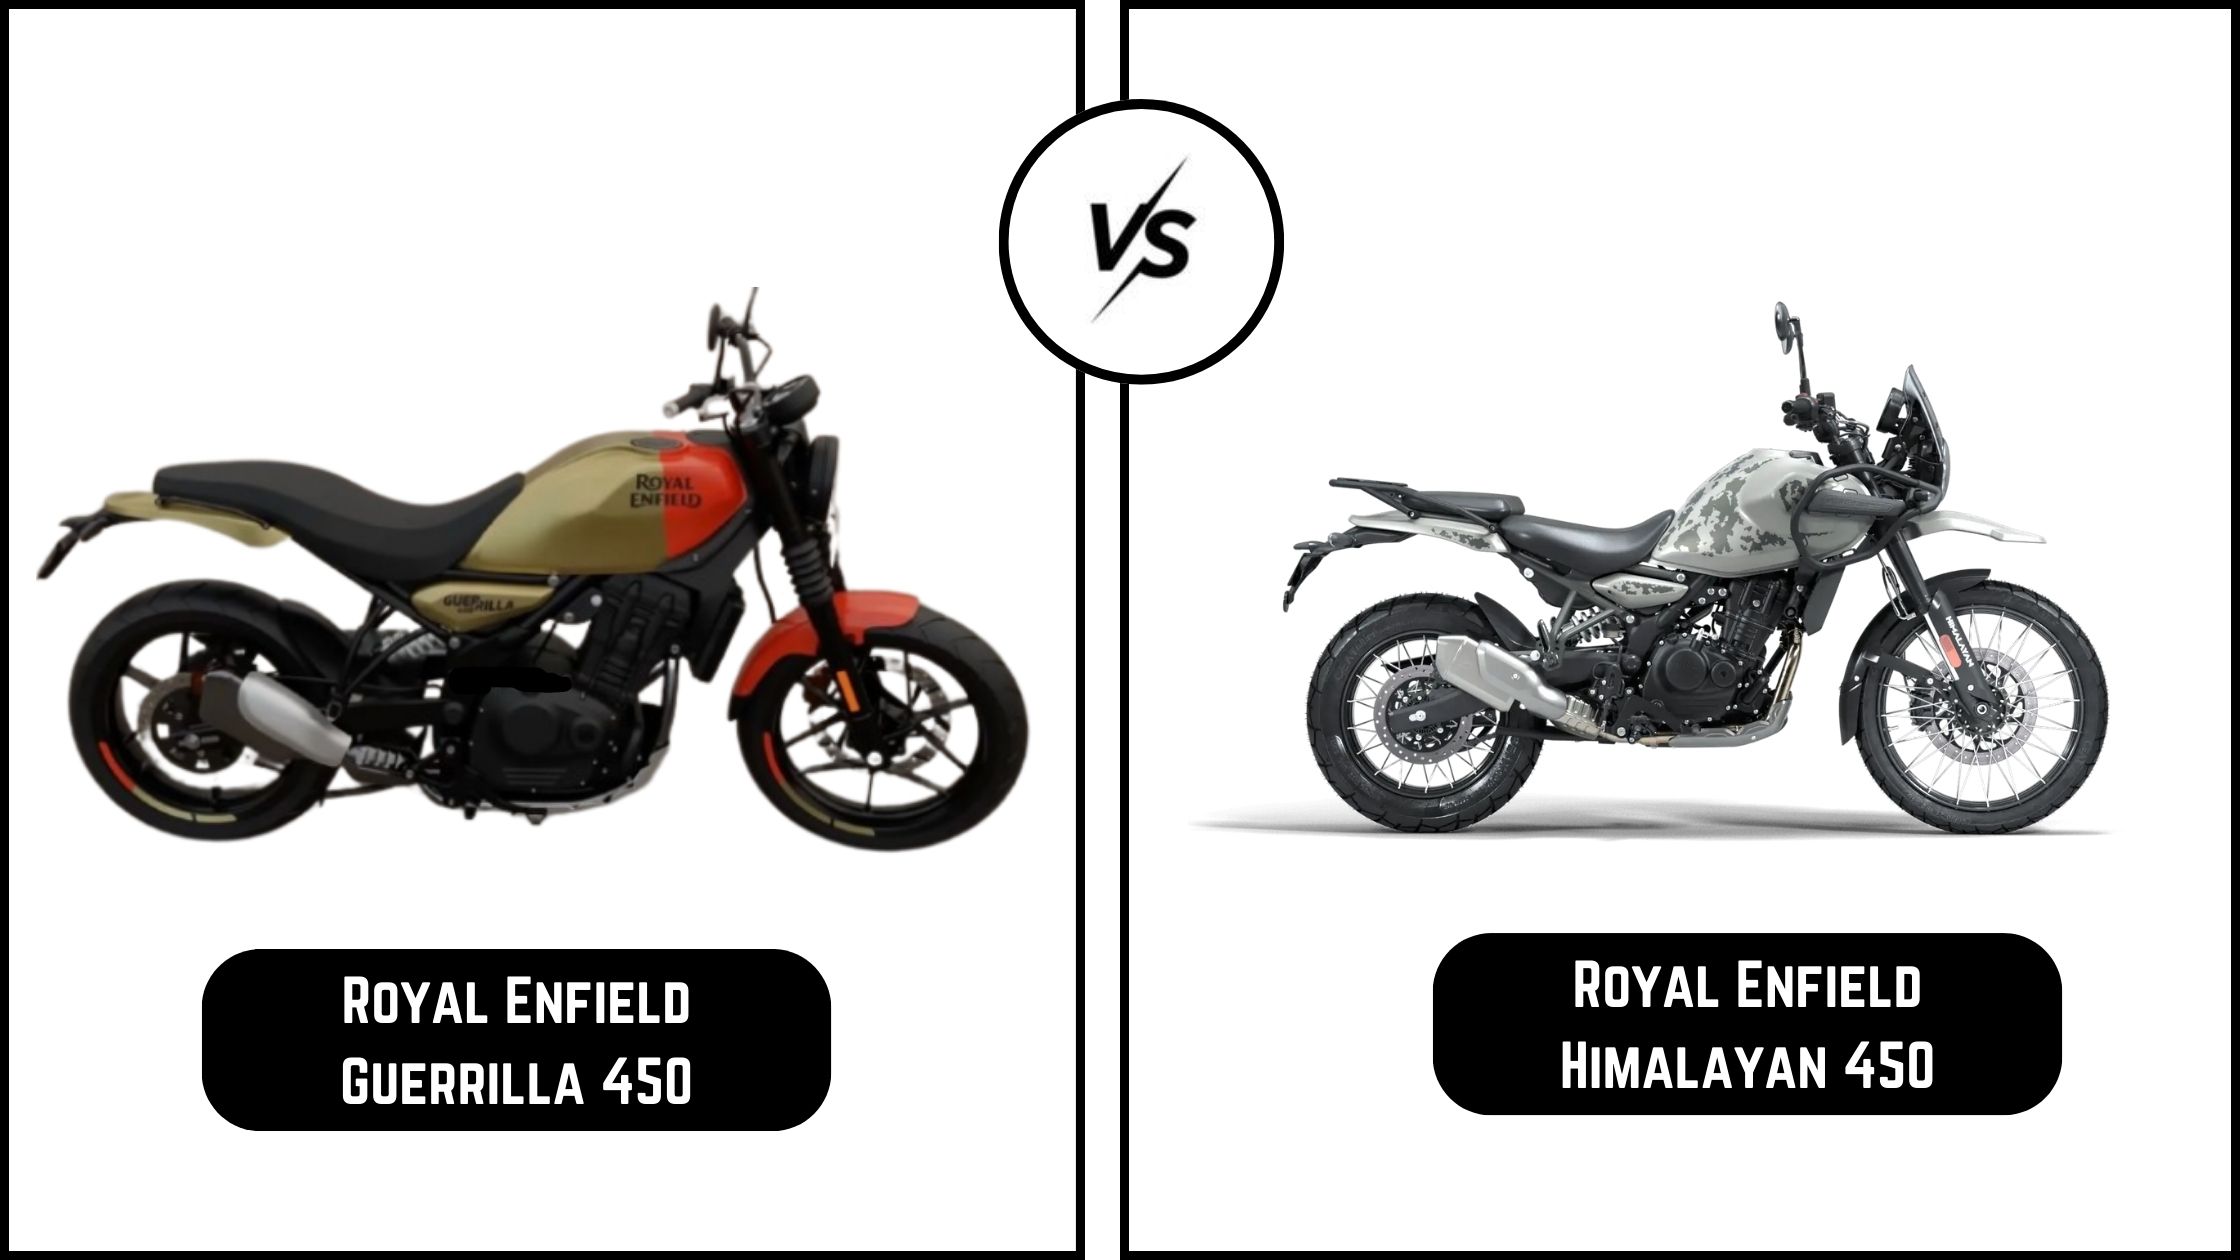 Visual Differences Between Royal Enfield Guerrilla 450 and Himalayan 450